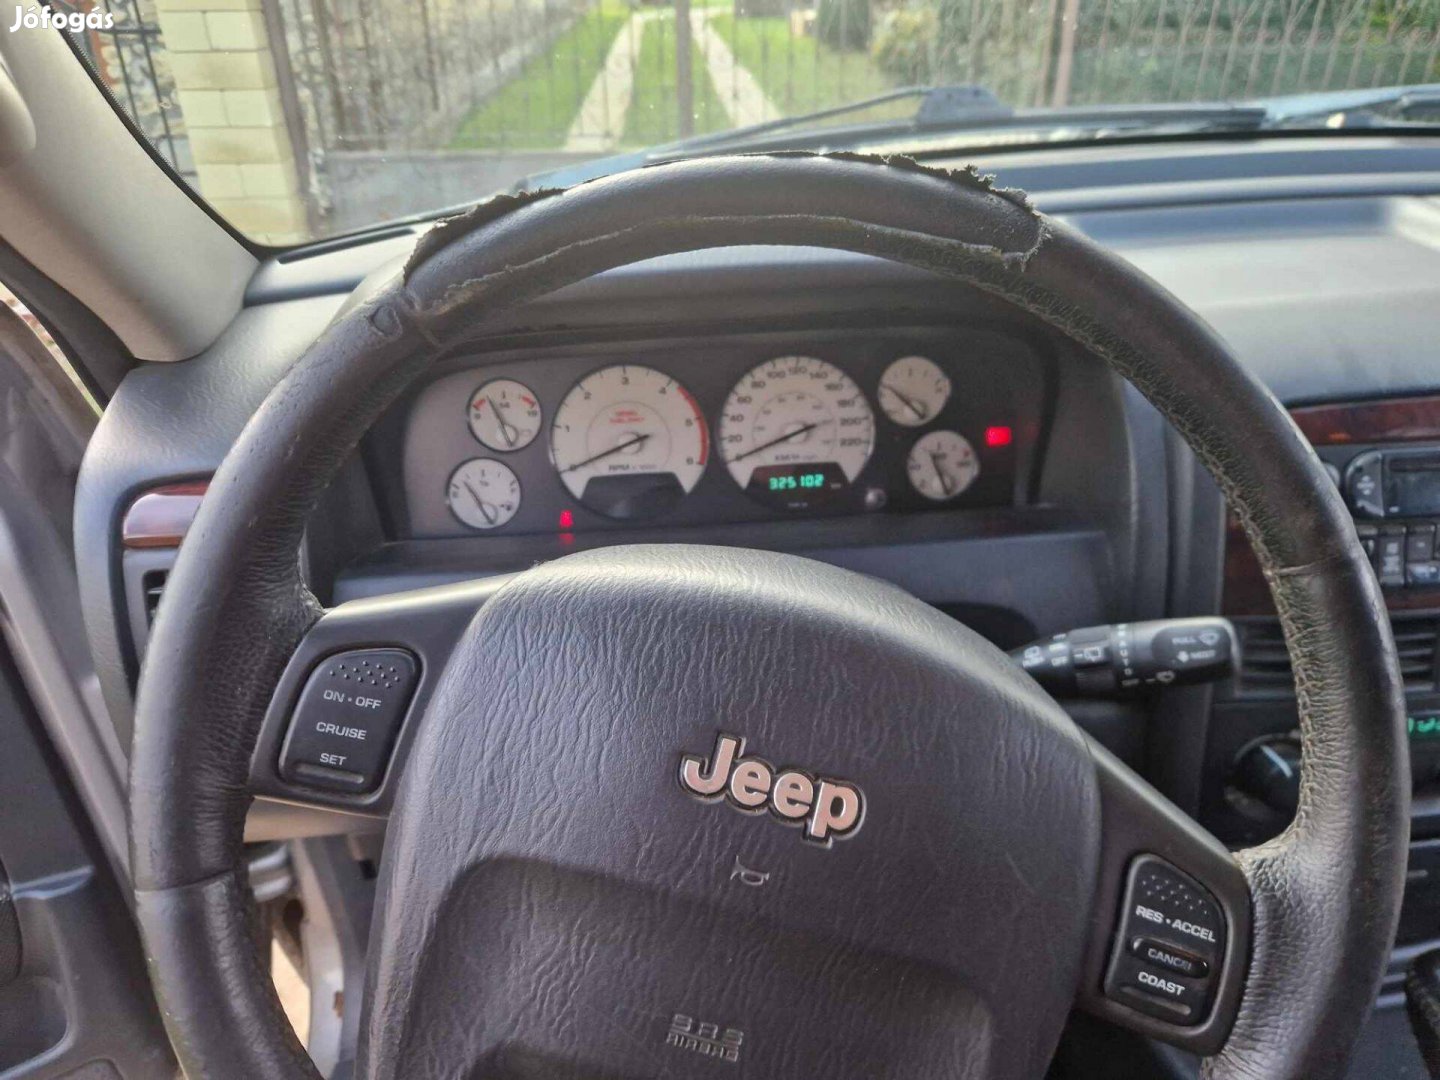 Eladó Jeep terepjáró!